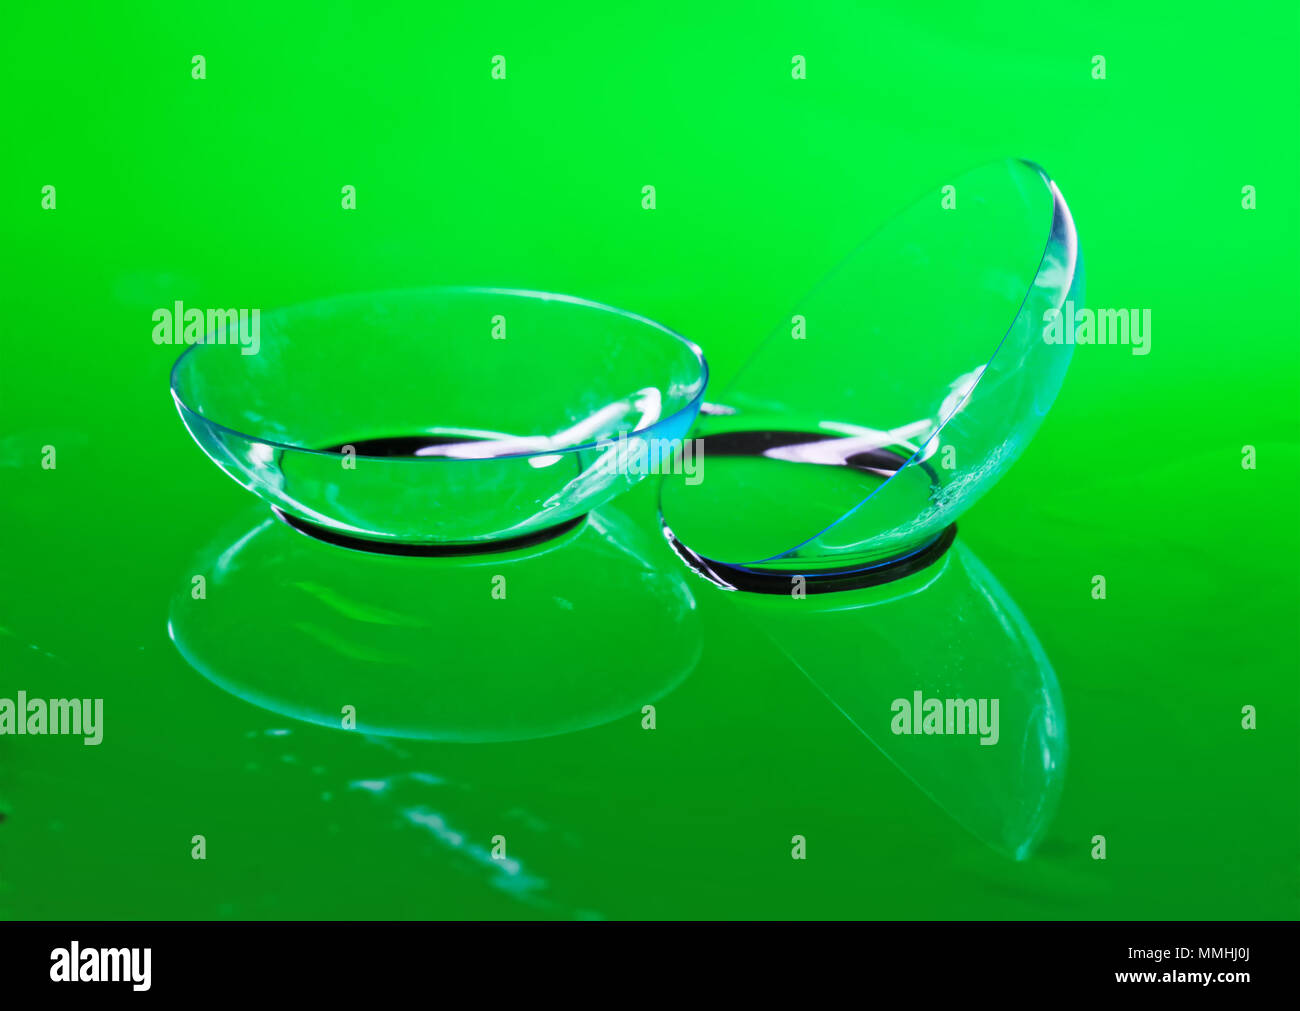 Trasparente lenti a contatto per la correzione di visione giacciono su uno specchio superficie bagnata. Sfondo verde Foto Stock